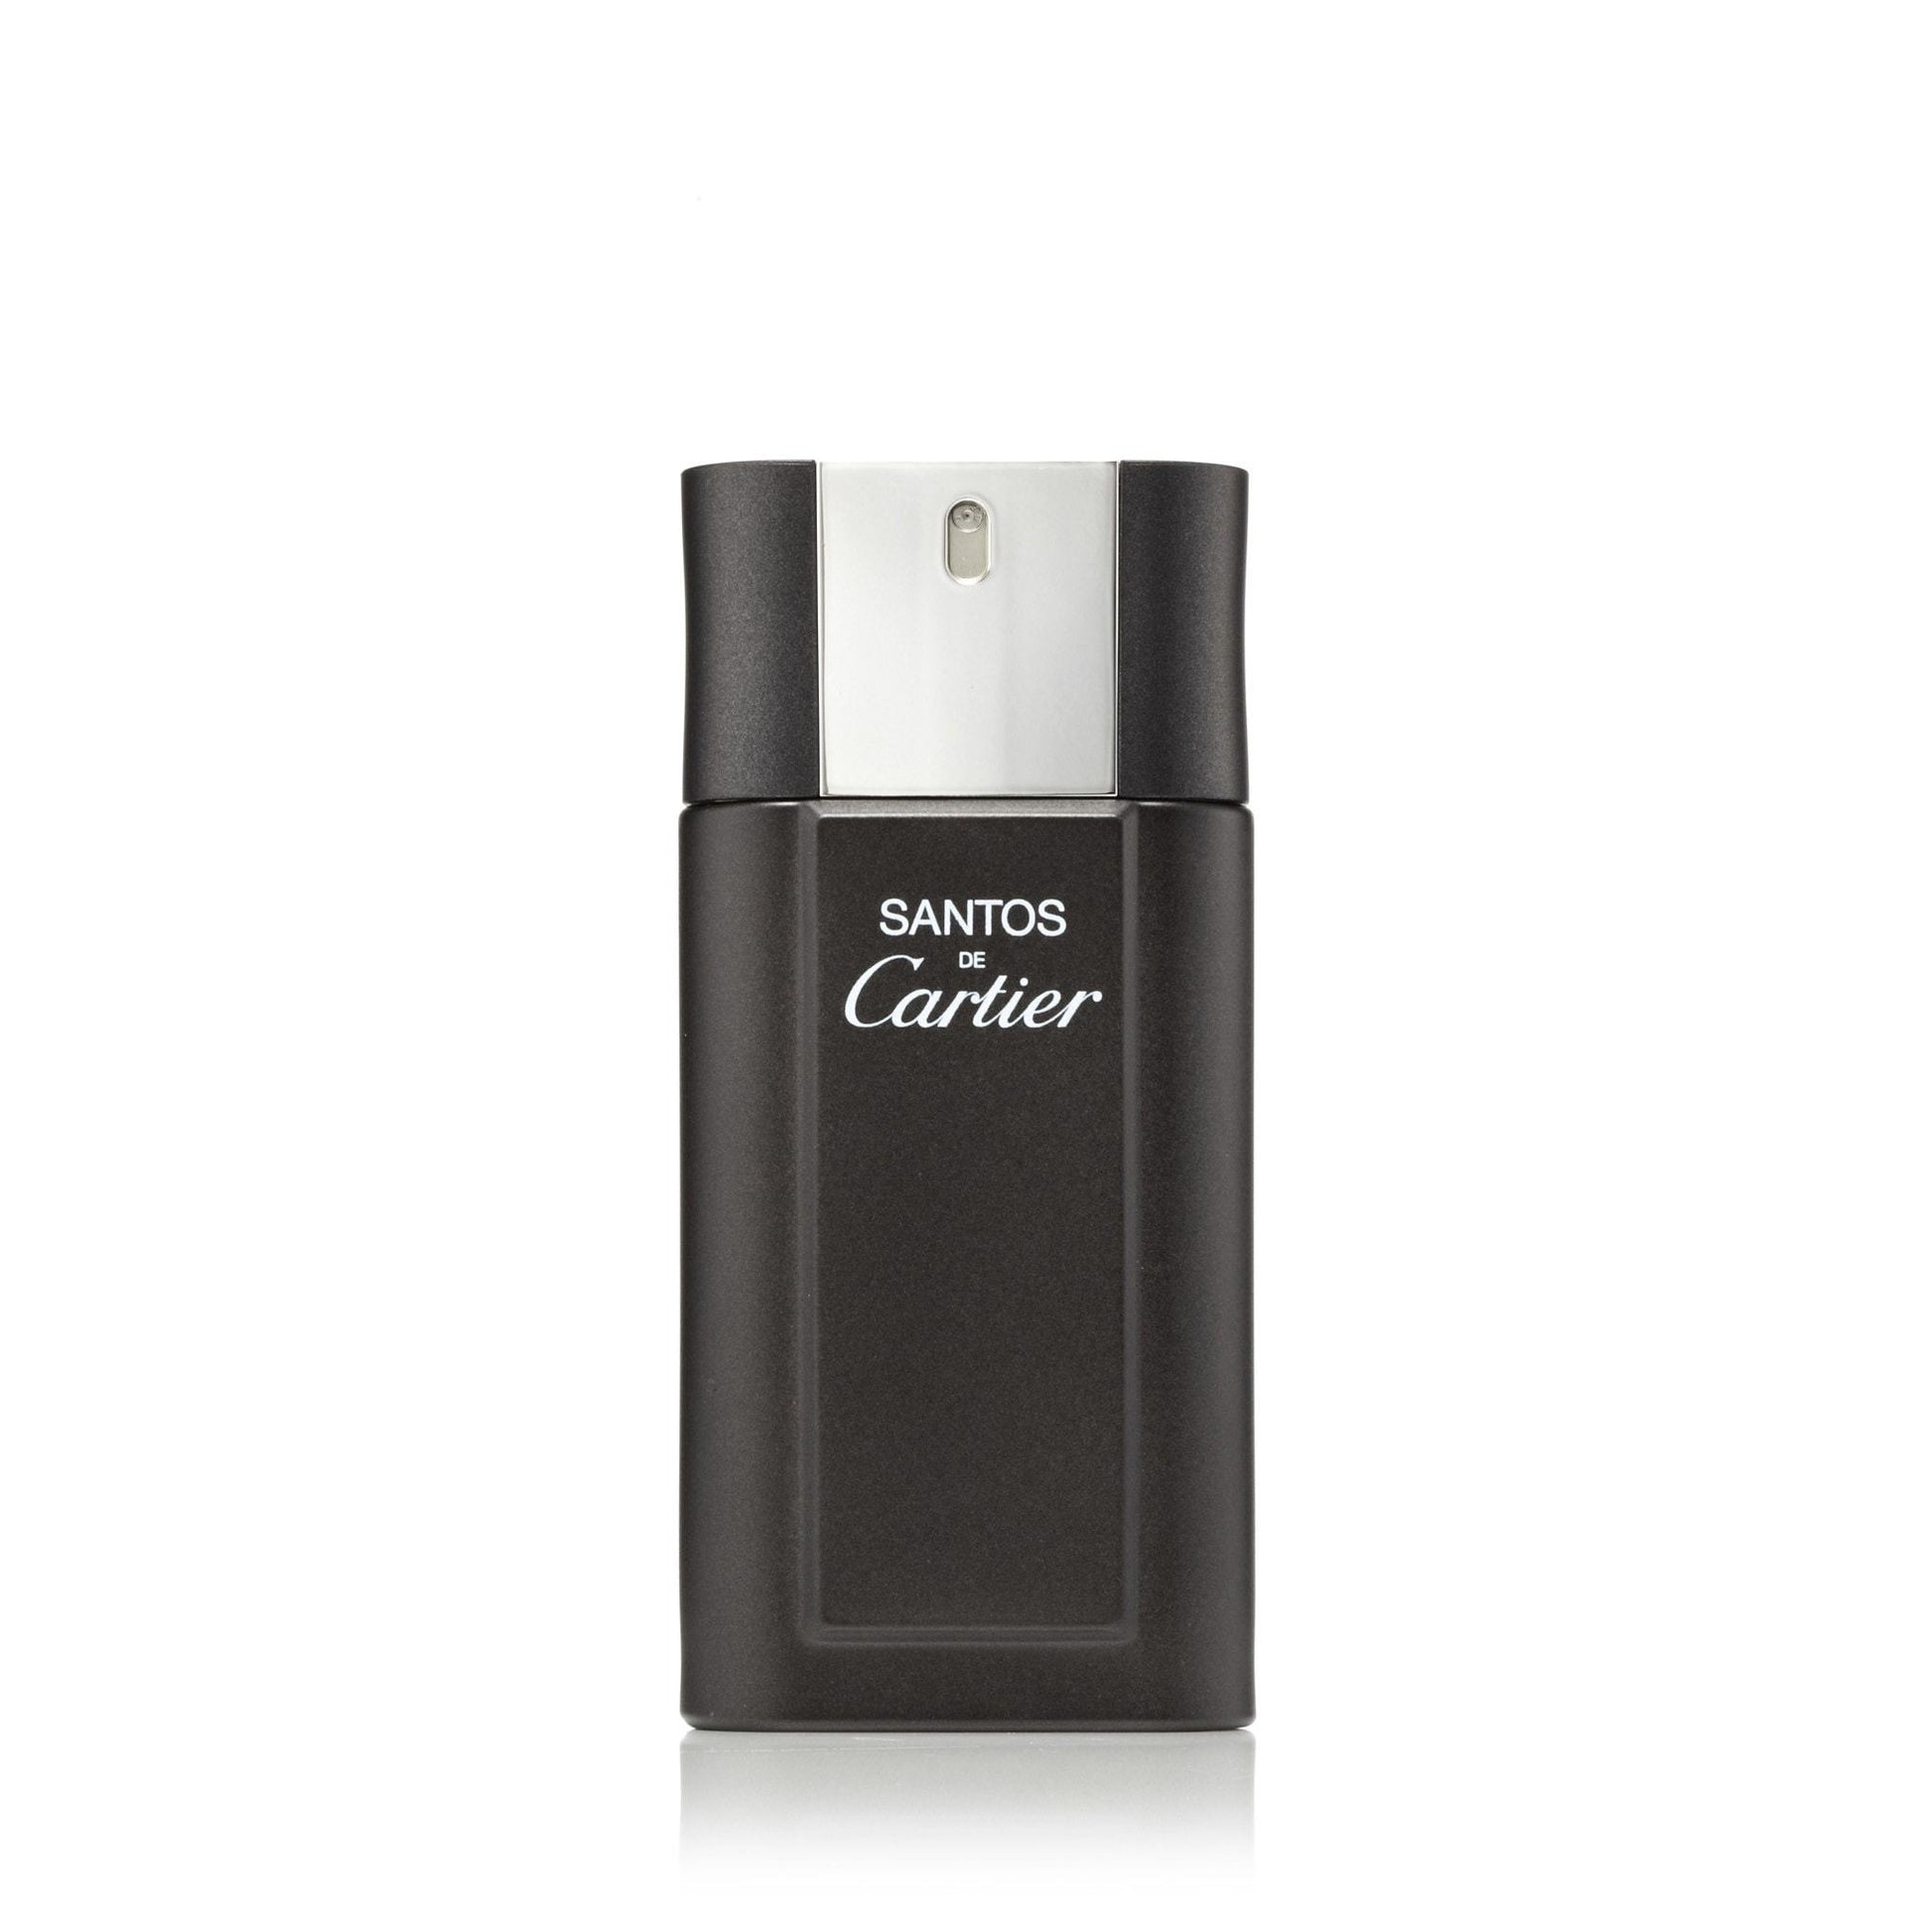 Santos Eau de Toilette Spray for Men by Cartier, Product image 1